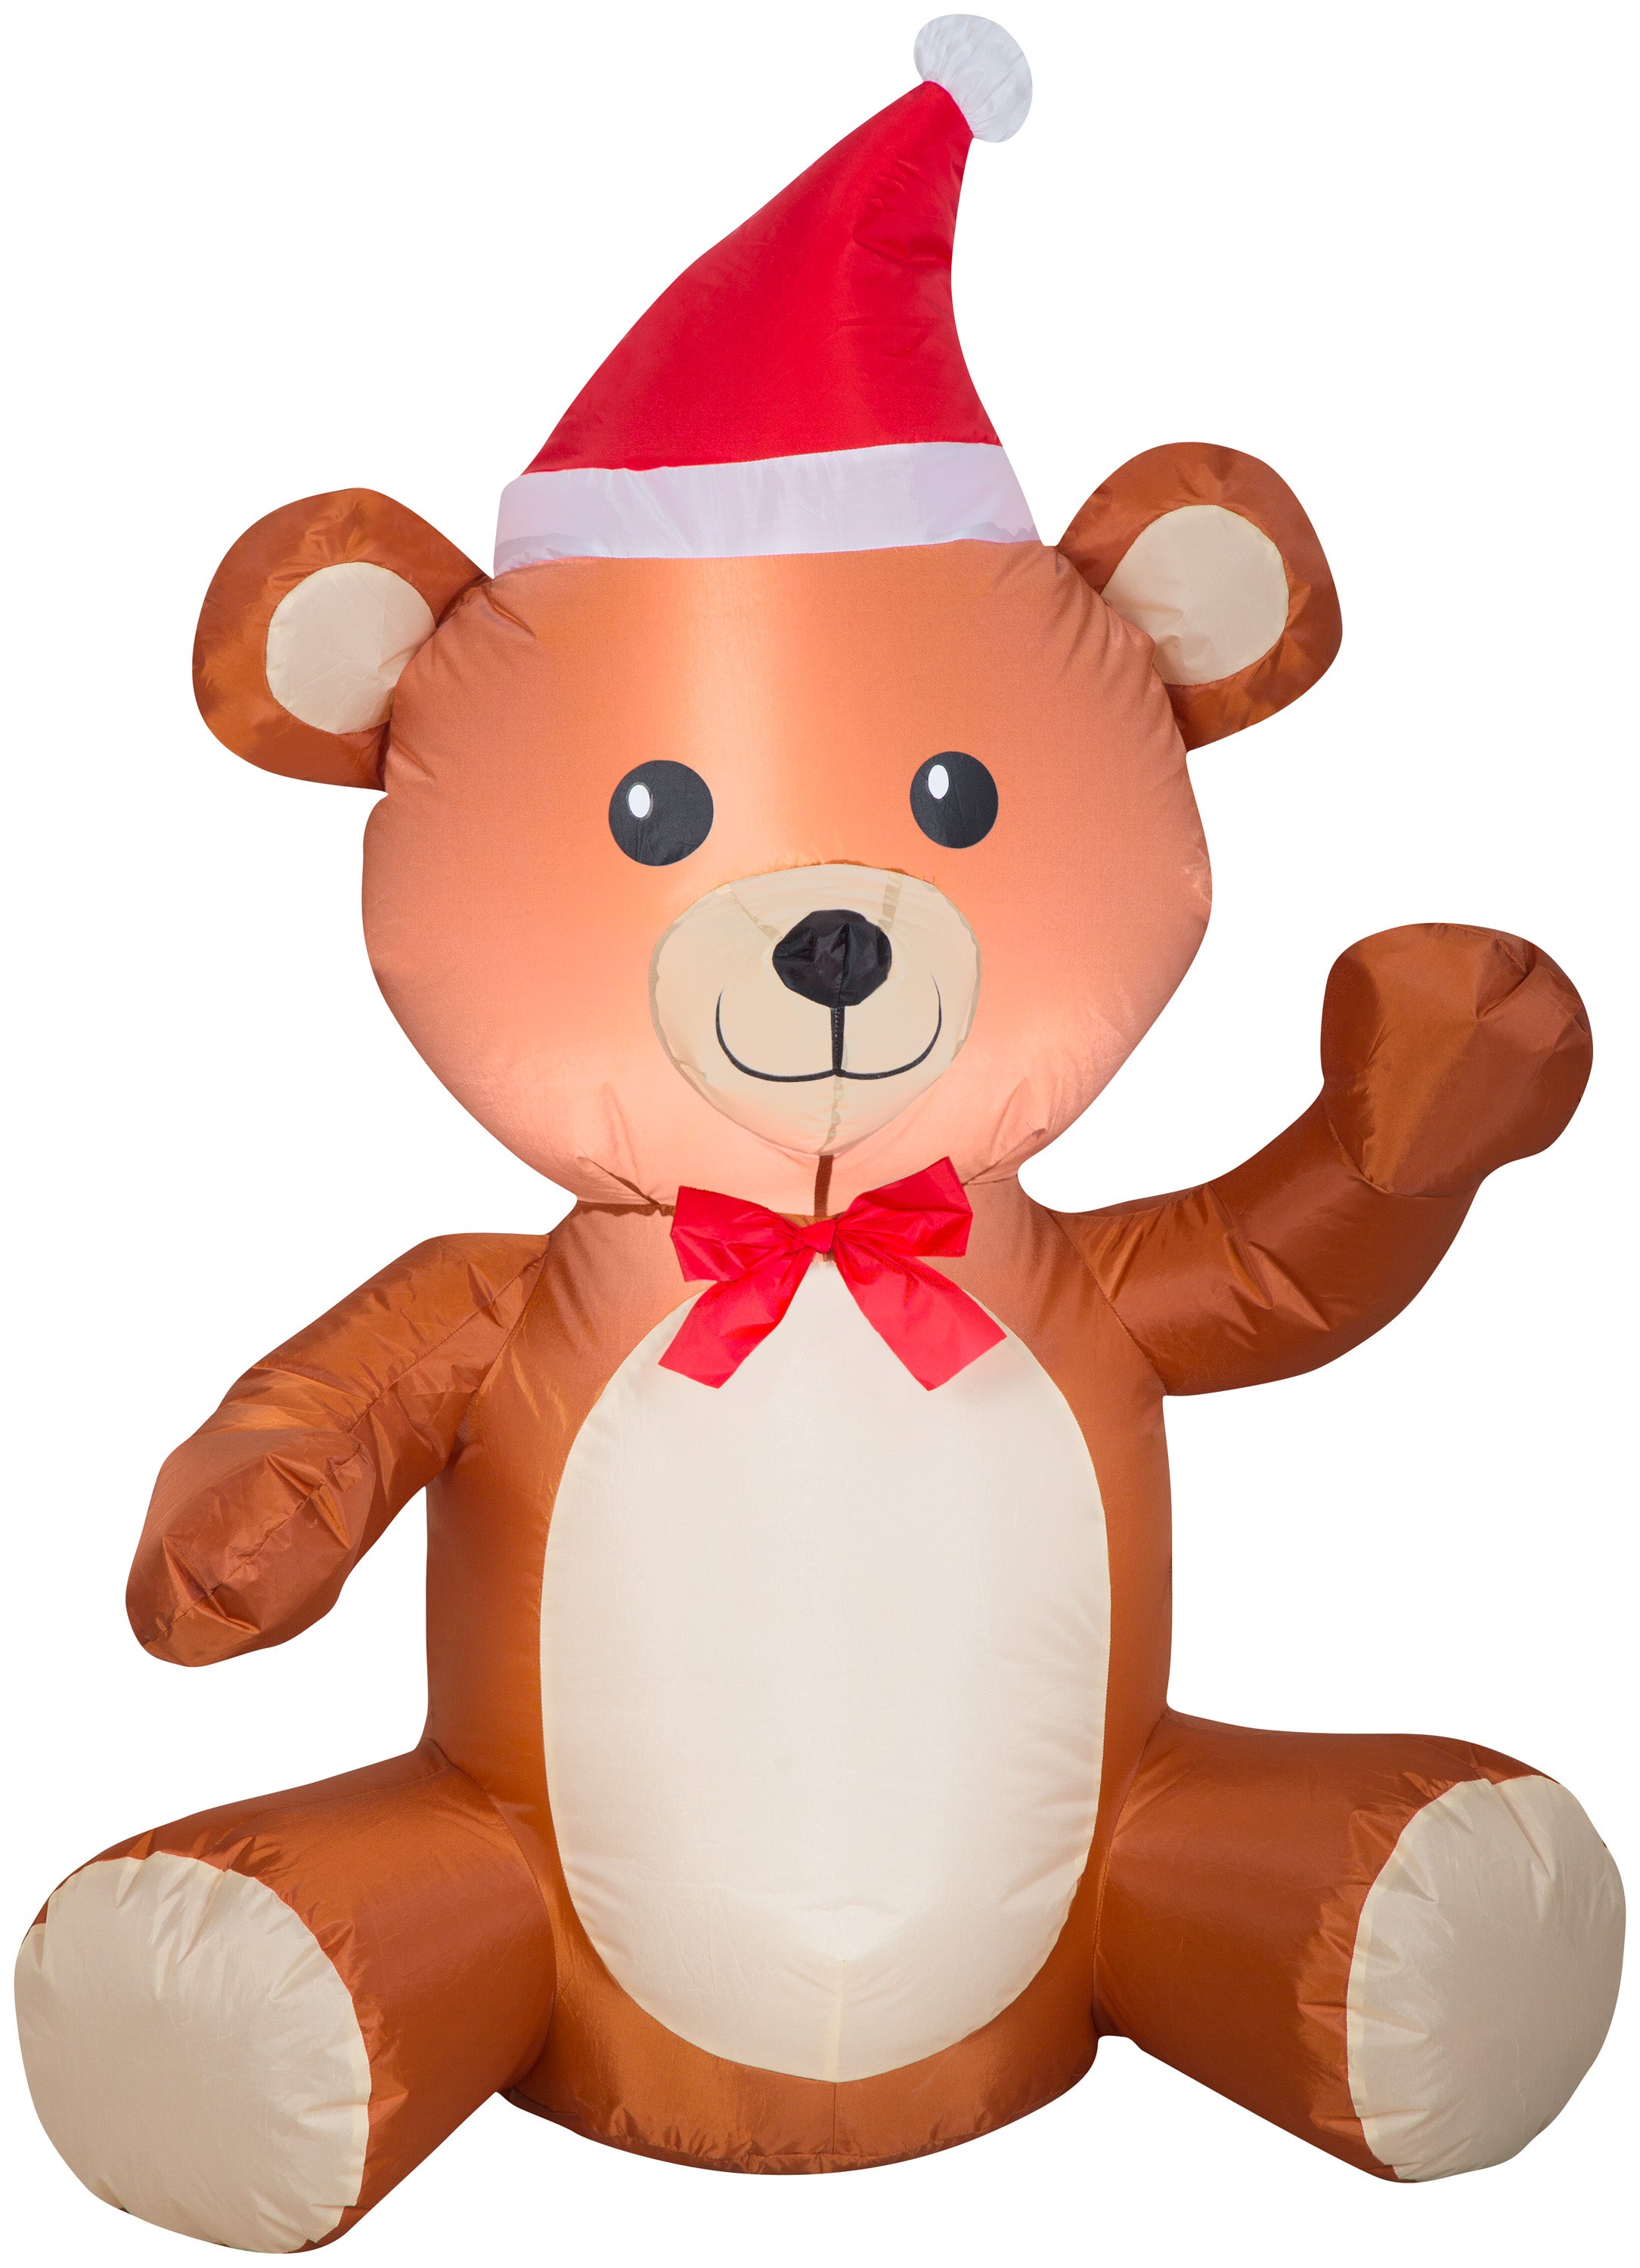 Gemmy 3.5' Airblown Inflatable Christmas Teddy Bear